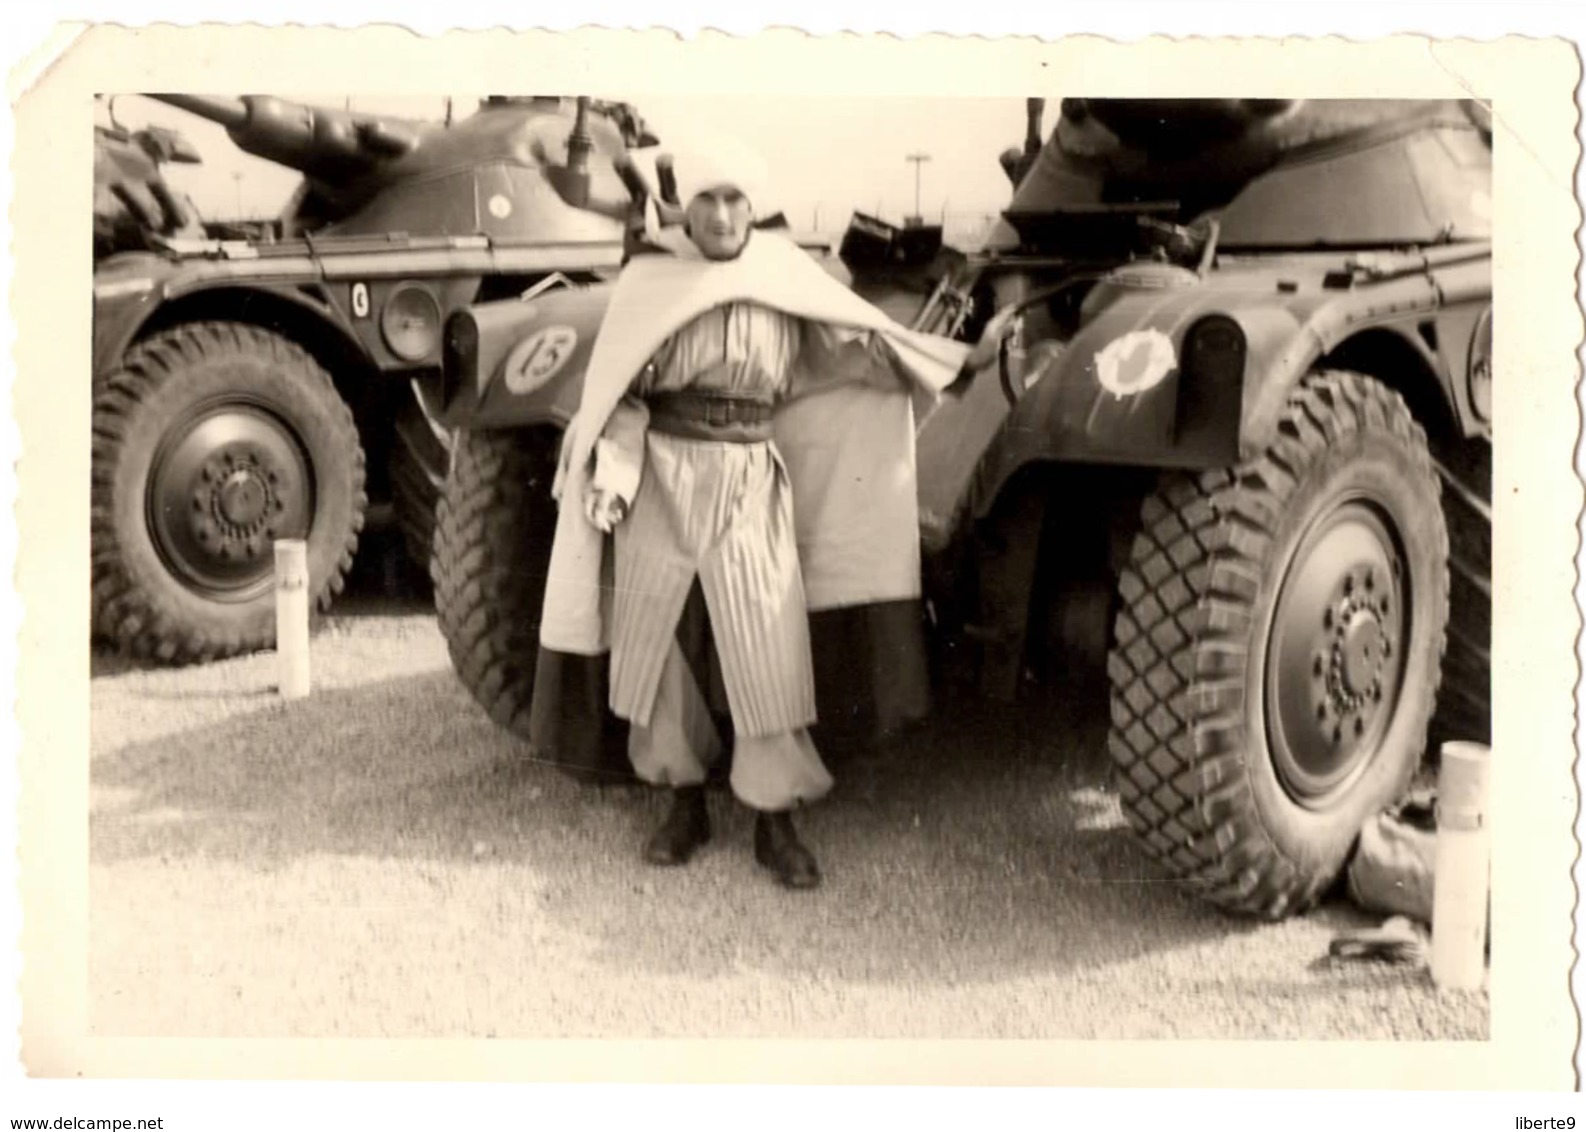 Tankiste 1961 Avec Cape - Militaire Armée D Afrique ? Zouave ? Tirailleur ? Conducteur Du Char Photo C.9x6cm - Guerre, Militaire